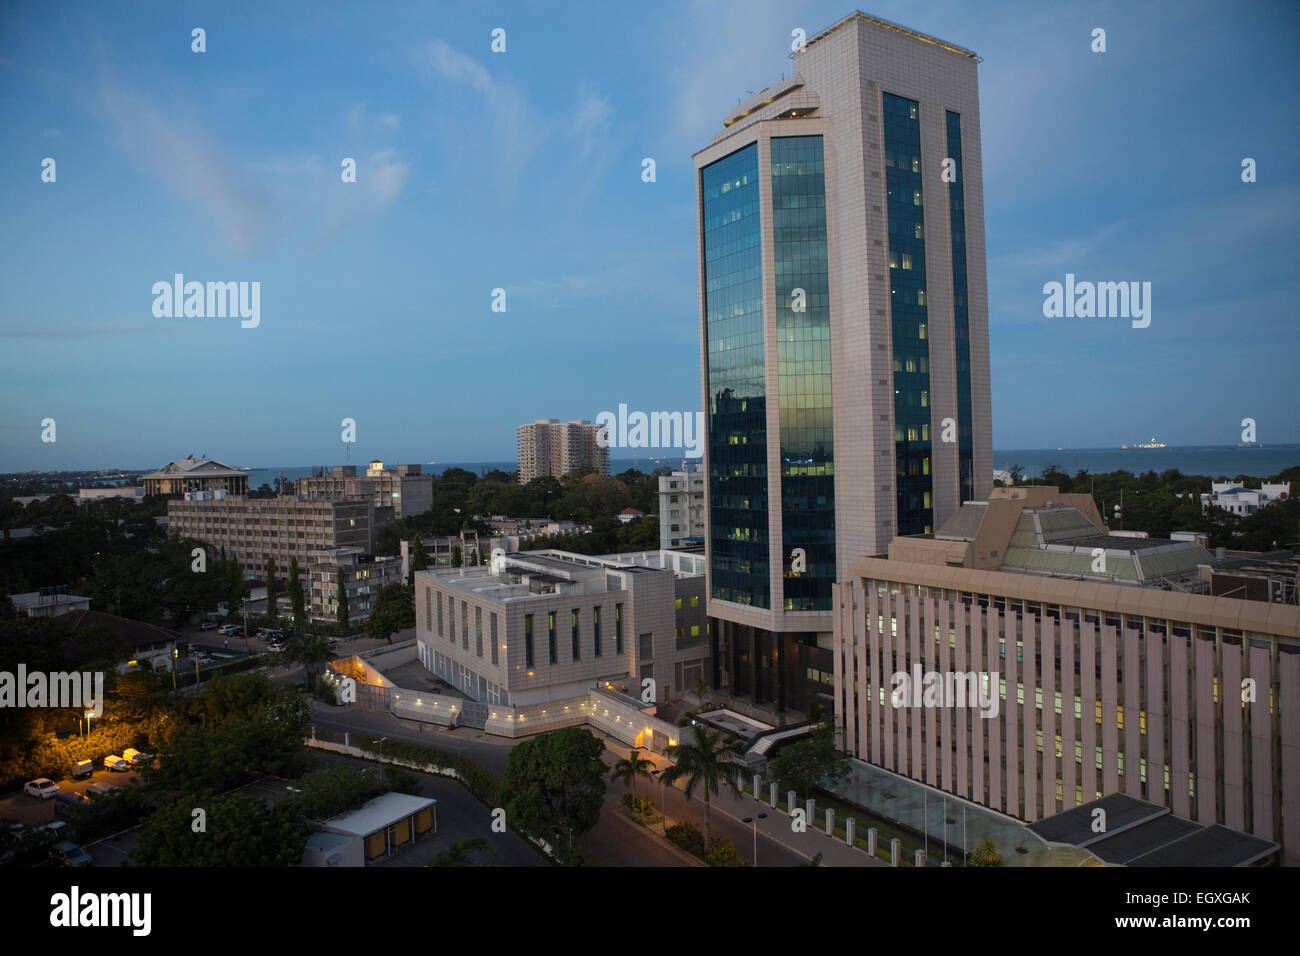 Bank von Tansania Gebäude - Dar Es Salaam, Tansania, Ostafrika. Stockfoto